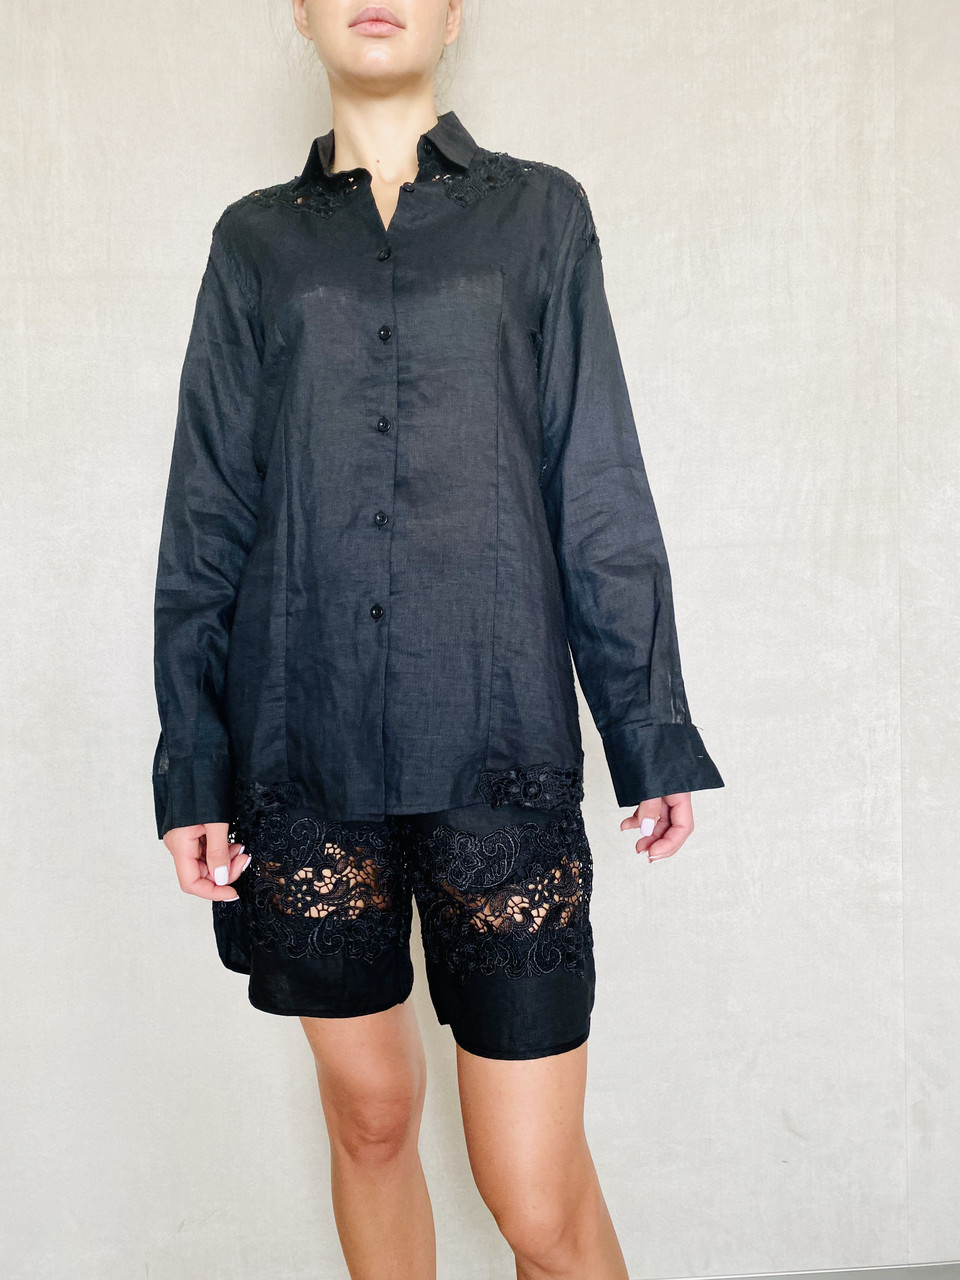 Сорочка блуза жіноча чорна льон із довгим рукавом і ажурними вставками., фото 1